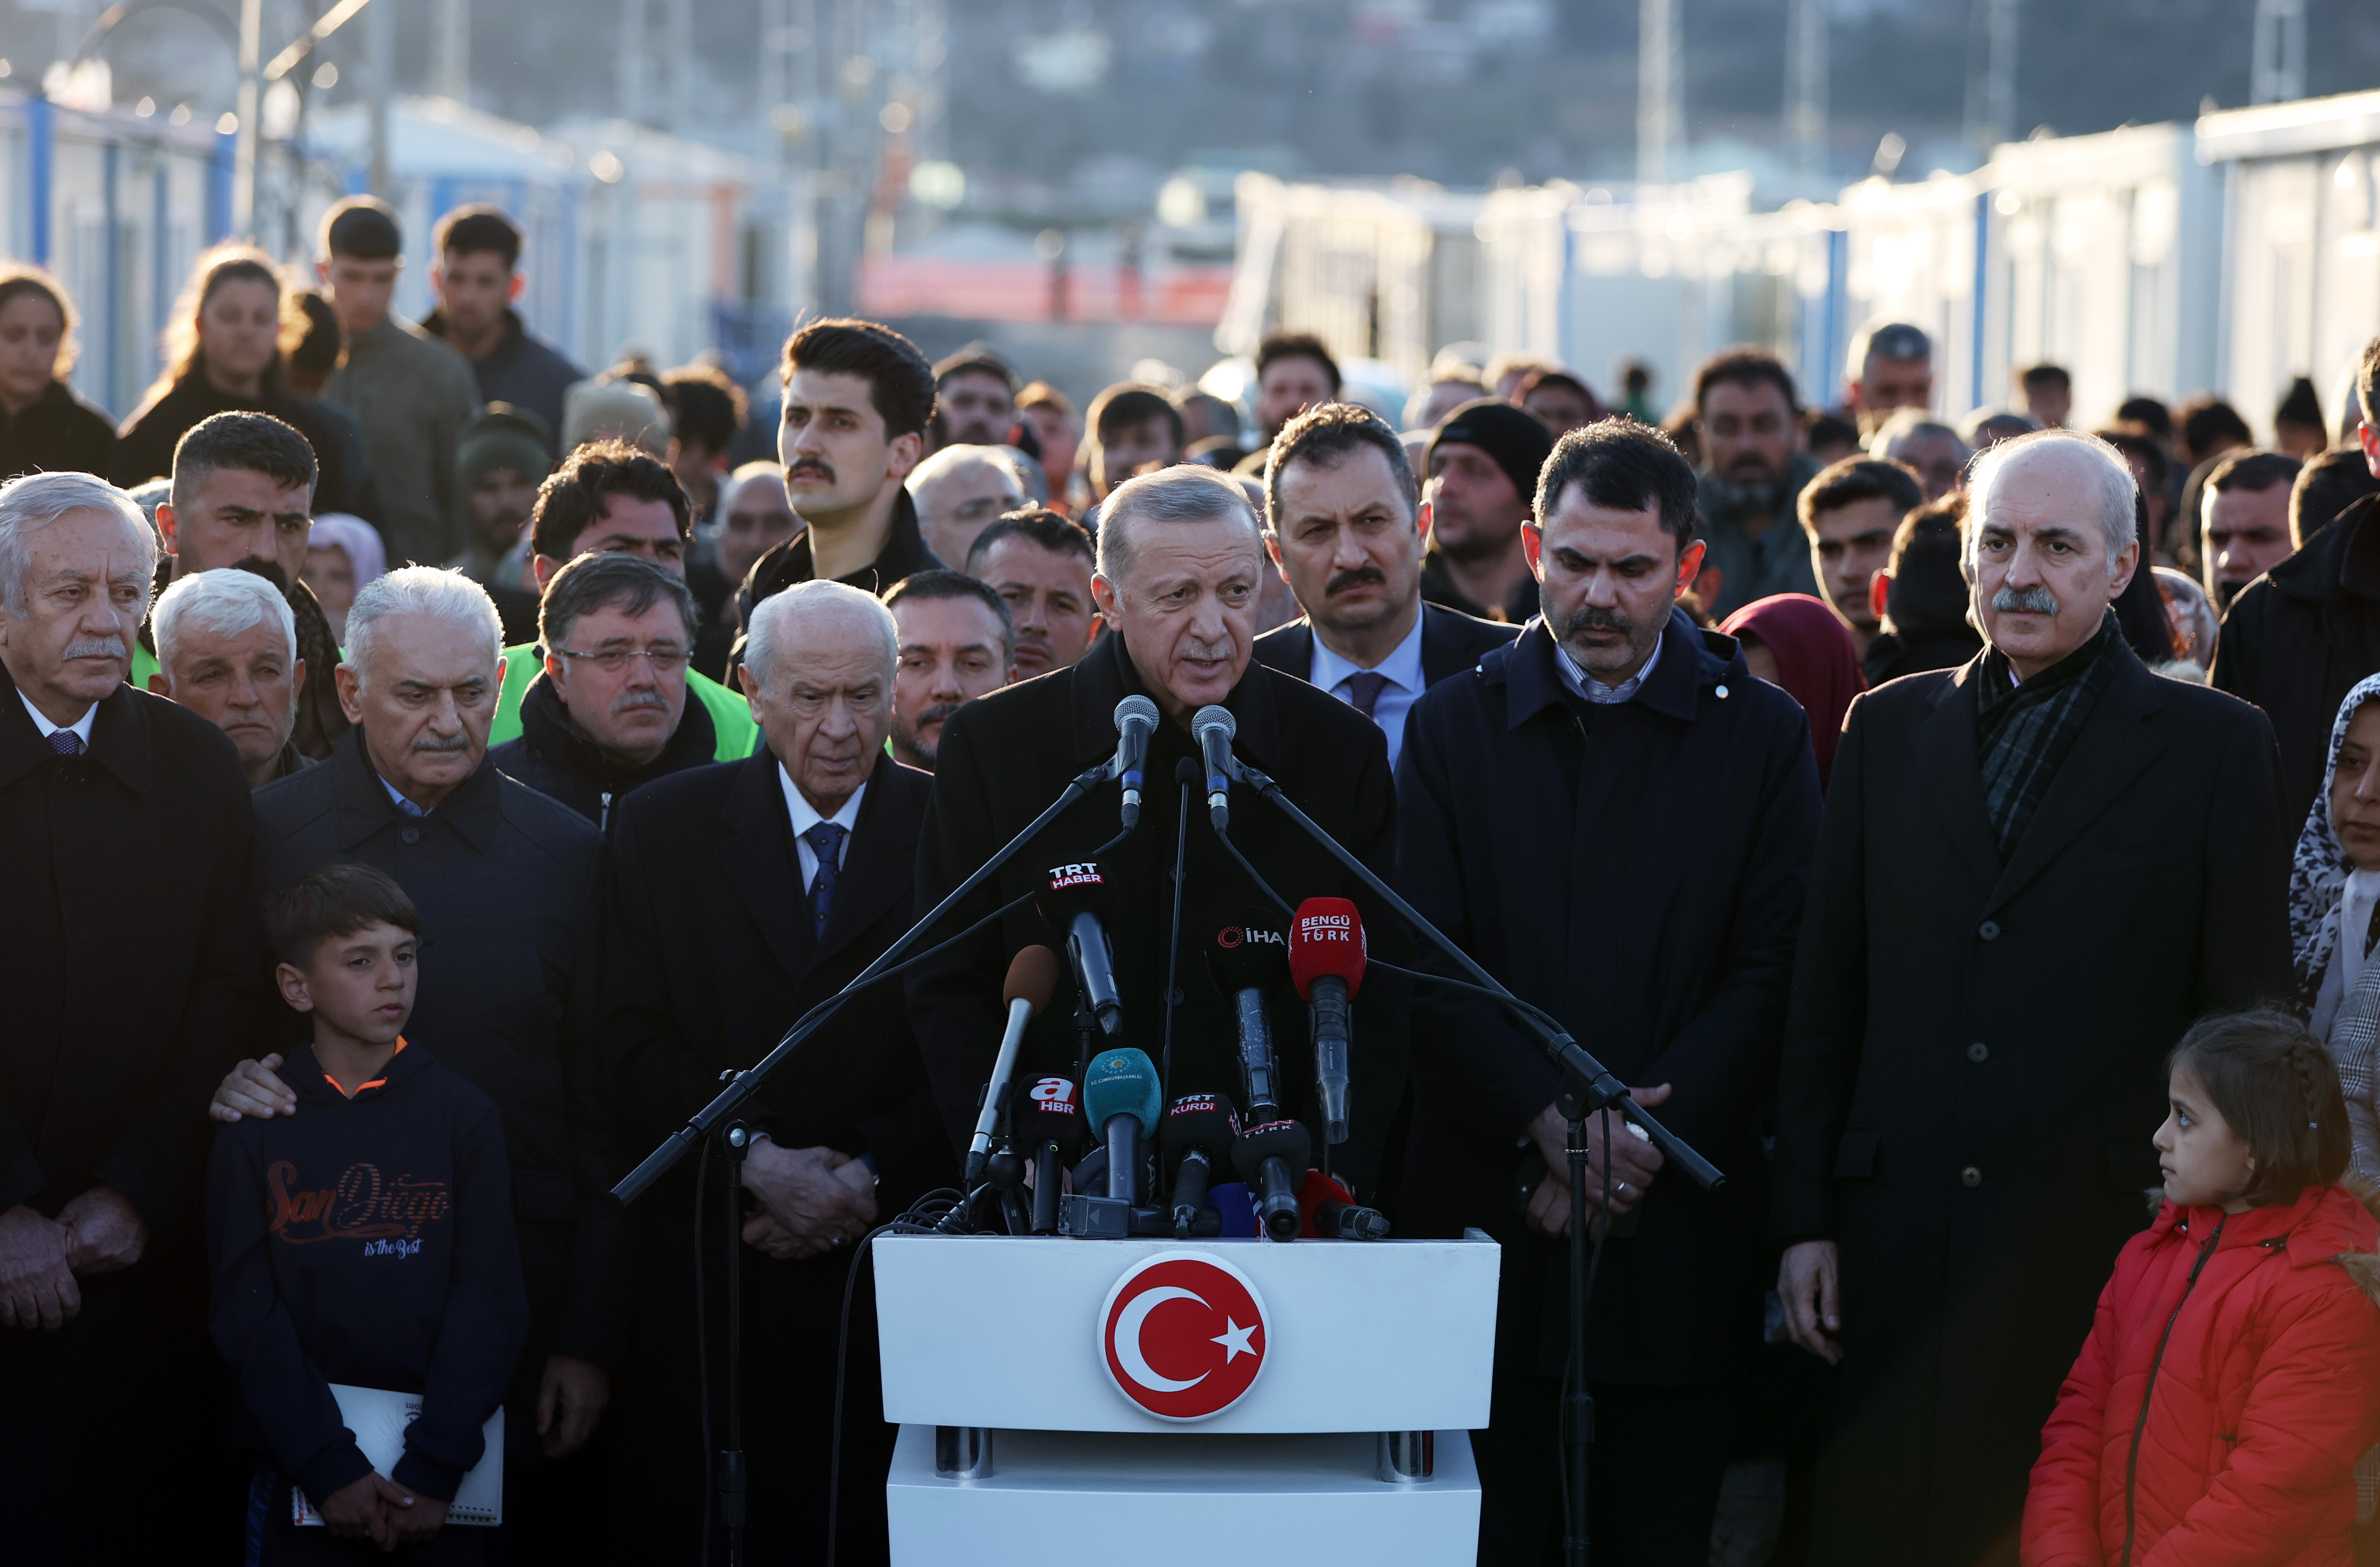 Der türkische Präsident Recep Tayyip Erdogan hält eine Rede nach einem Treffen mit den vom Erdbeben betroffenen Menschen